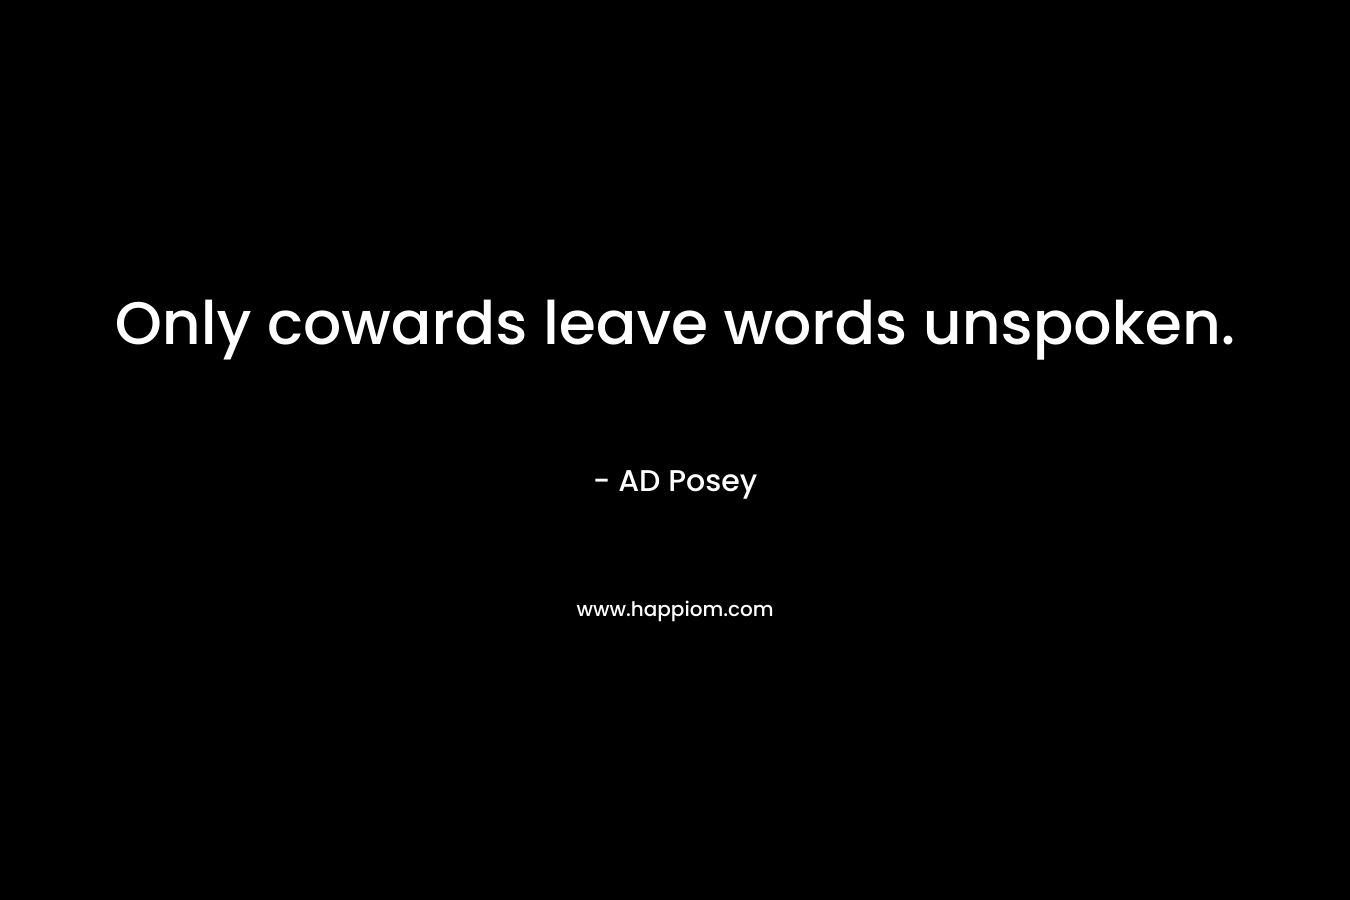 Only cowards leave words unspoken.